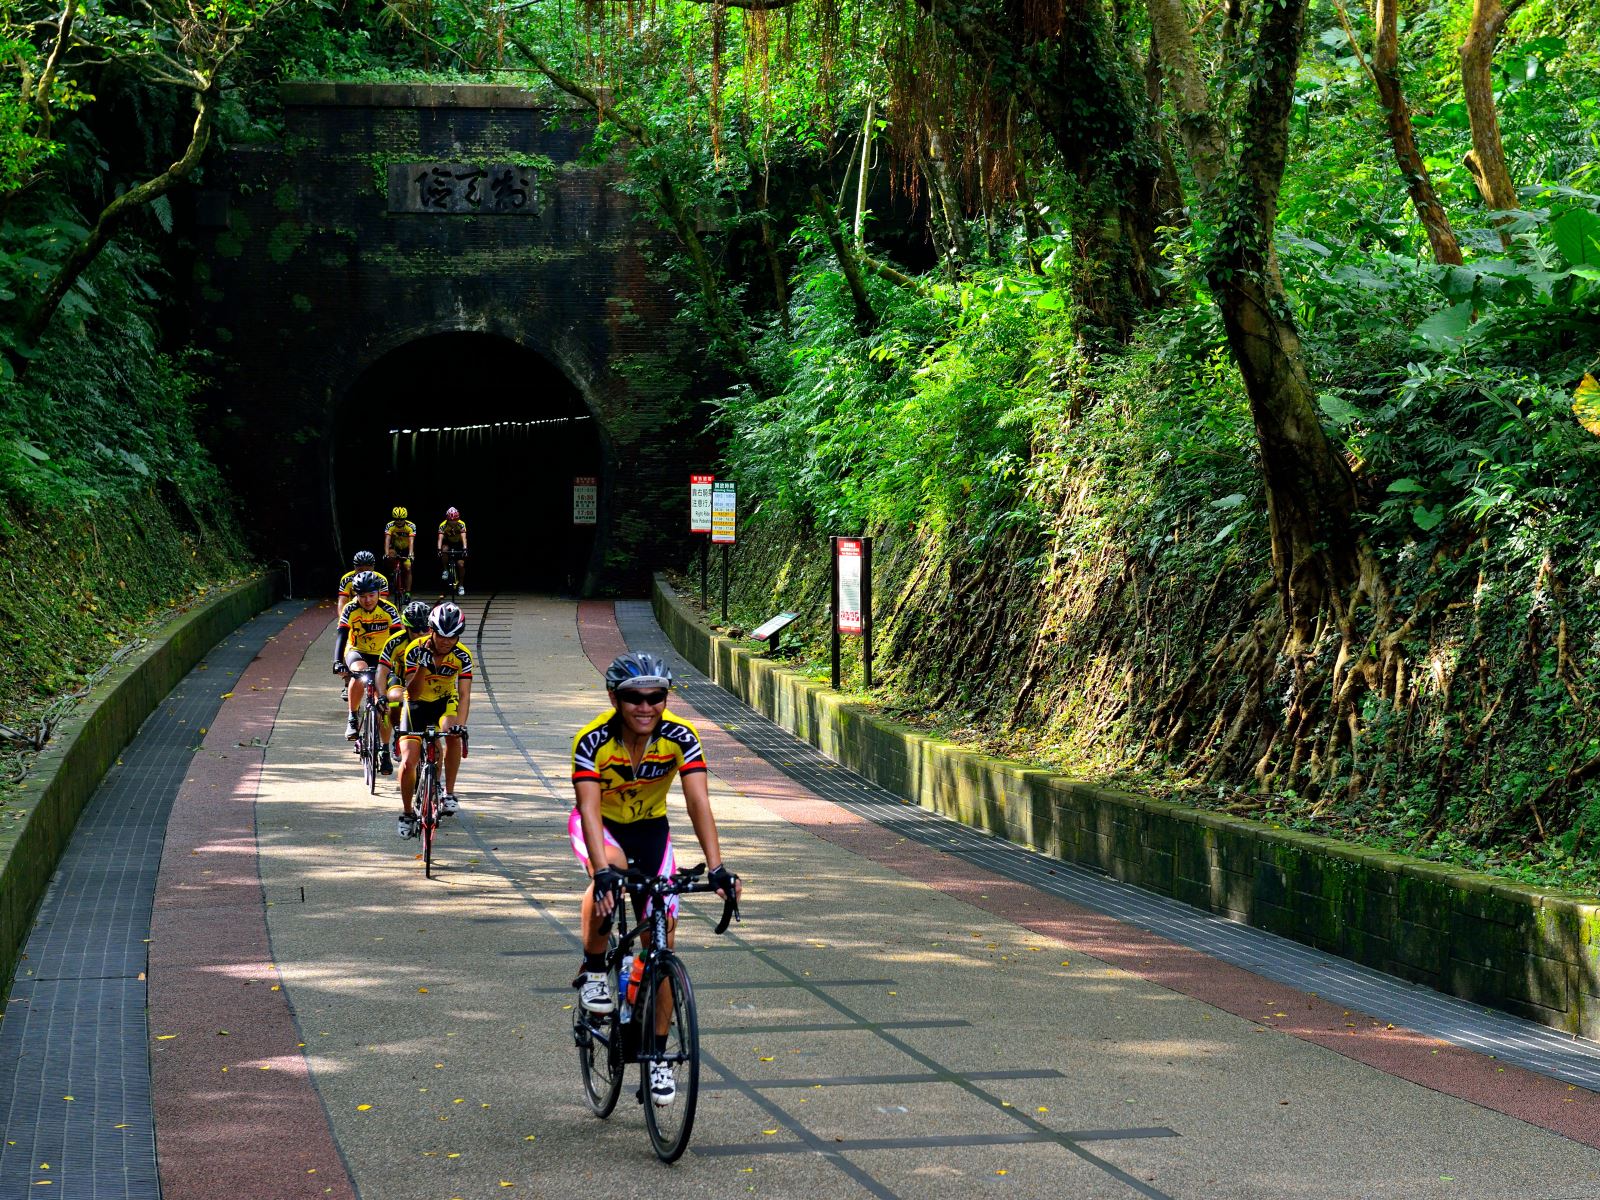 ส่วนที่มีชื่อเสียงที่สุดของภาคตะวันออกเฉียงเหนือคือแหล่งท่องเที่ยวทางจักรยานที่อุดมสมบูรณ์เช่น "Old Caoling Tunnel Bicycle Path" ที่สร้างขึ้นใหม่จากอุโมงค์รถไฟแห่งแรกของไต้หวัน